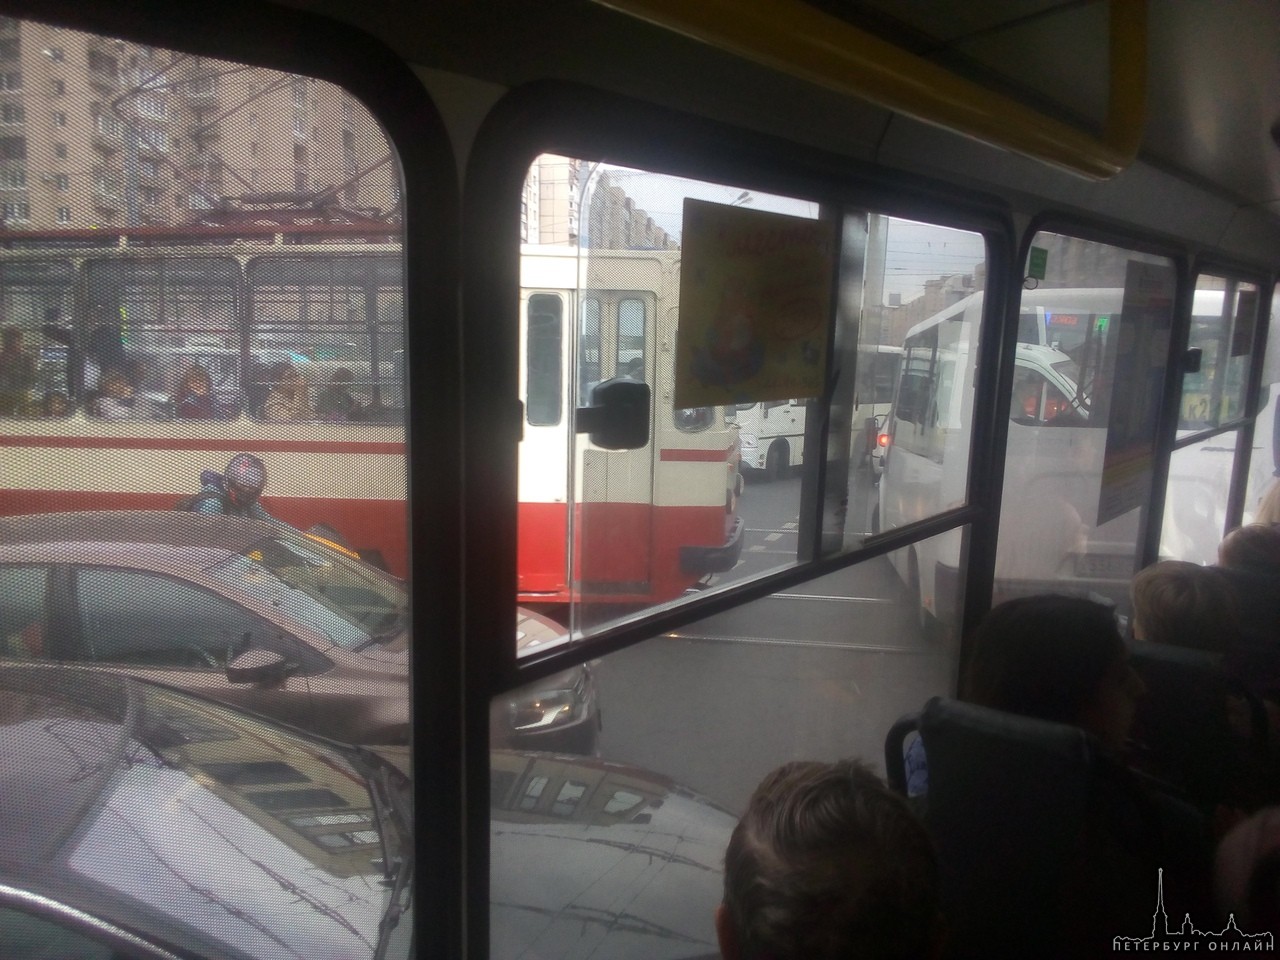 Из-за аварии на перекрестке Коллонтай и Большевиков Трамваям не проехать.